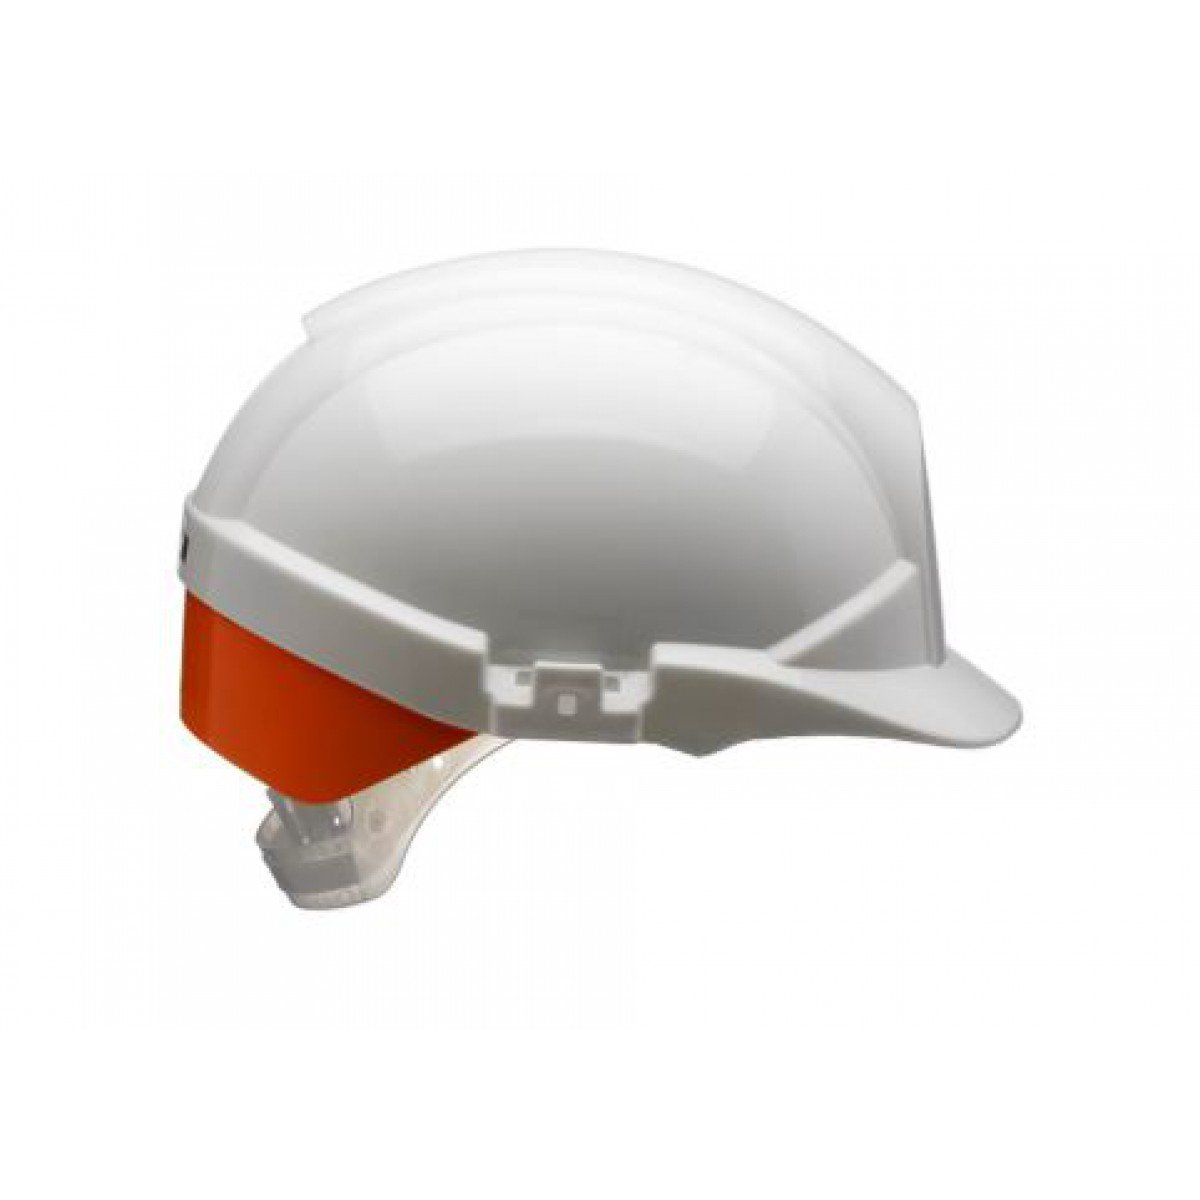 Centurion Reflex Mid Peak Safety Helmet 350gsm